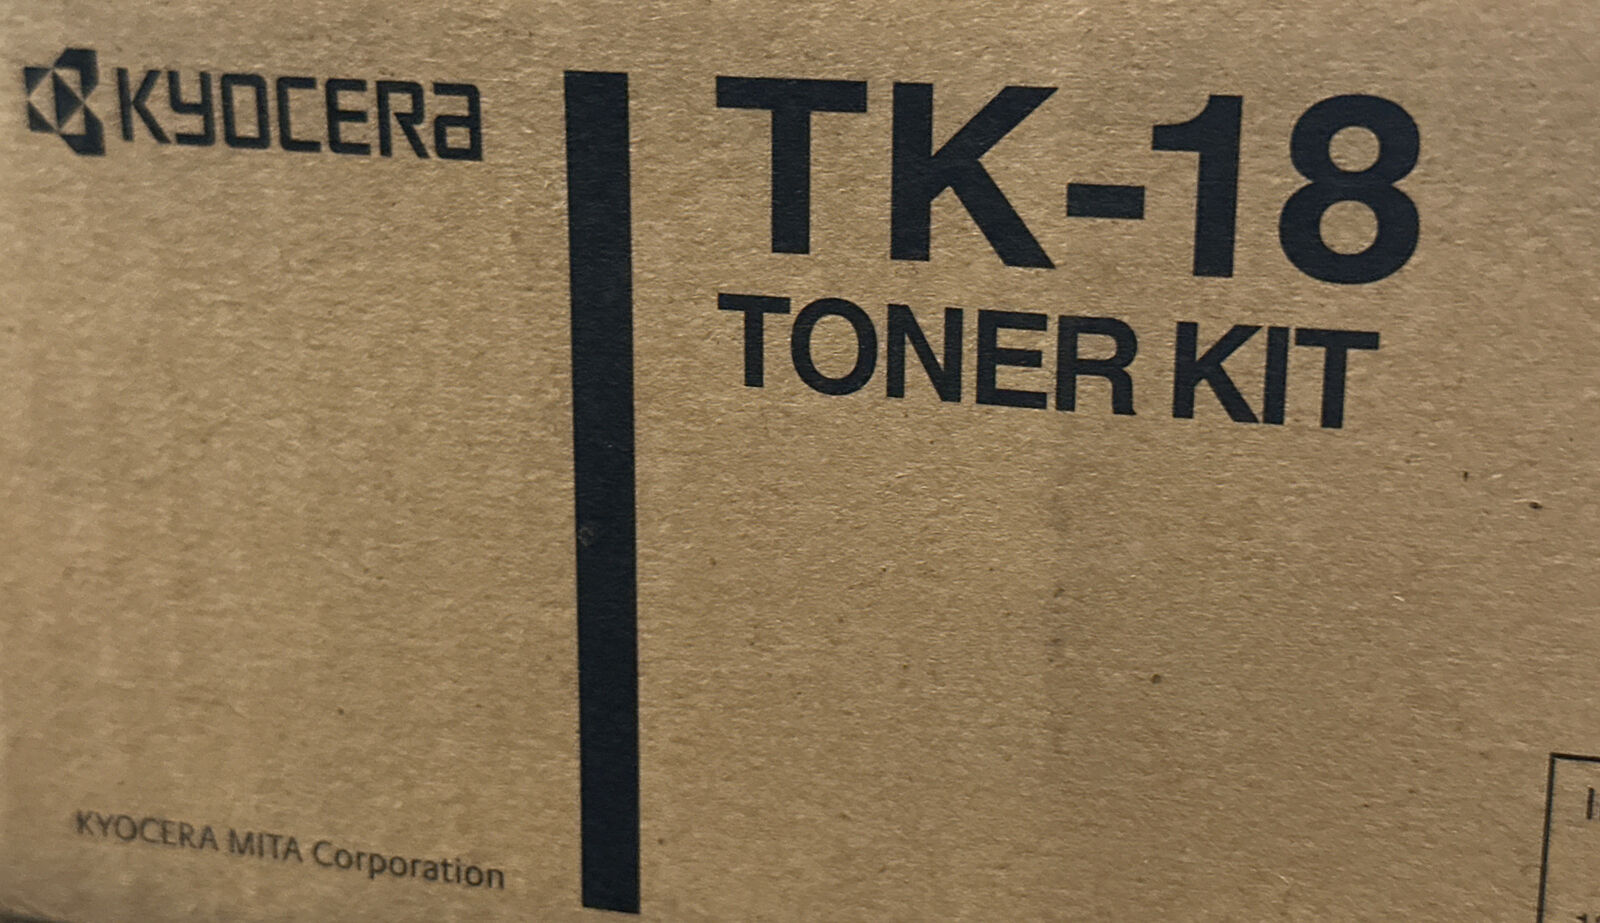 New Open Box KYOCERA TK-18 BLACK TONER KIT